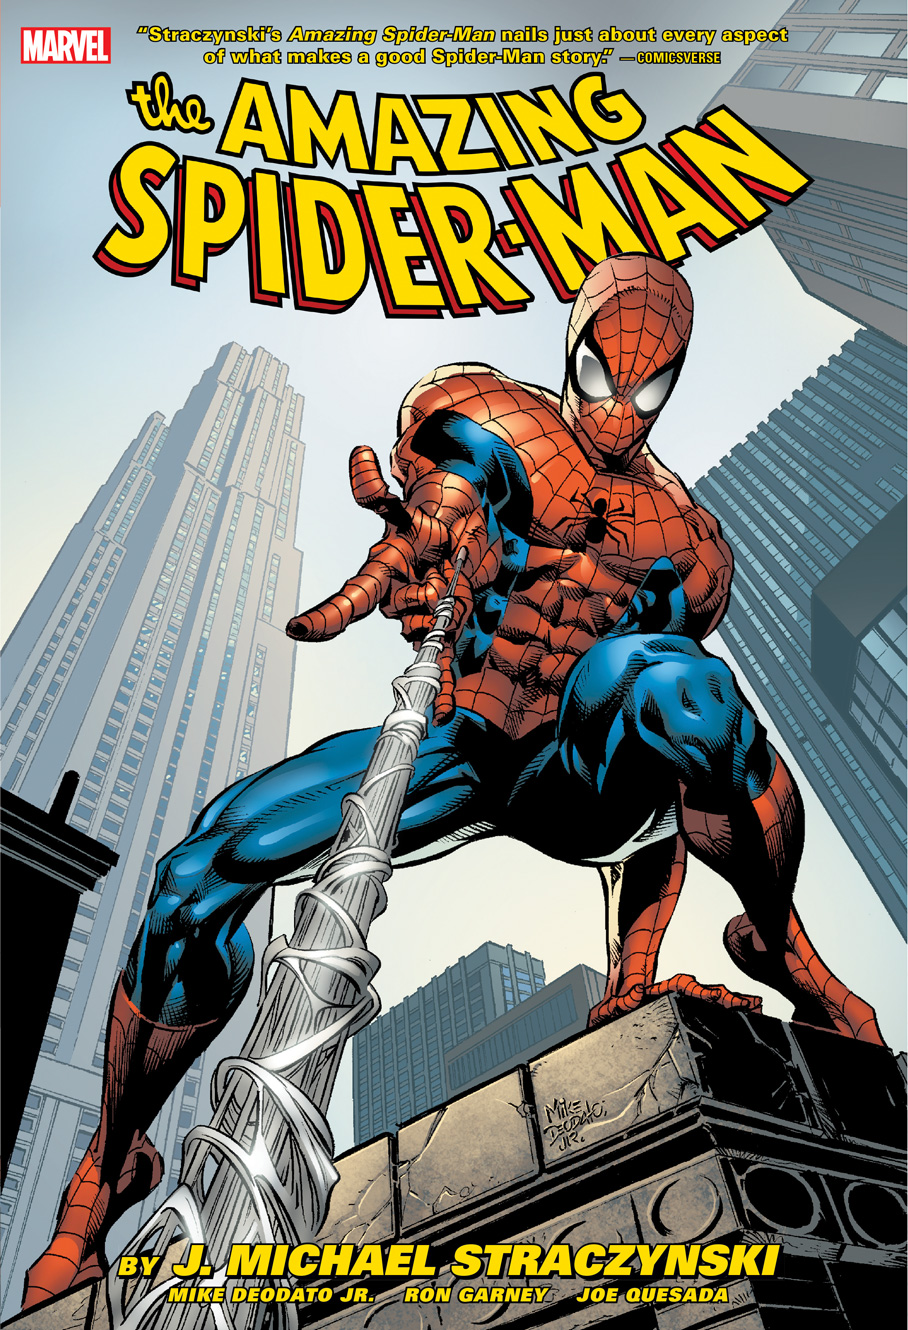 Amazing Spider-Man By J. Michael Straczynski Omnibus Hardcover Volume 2